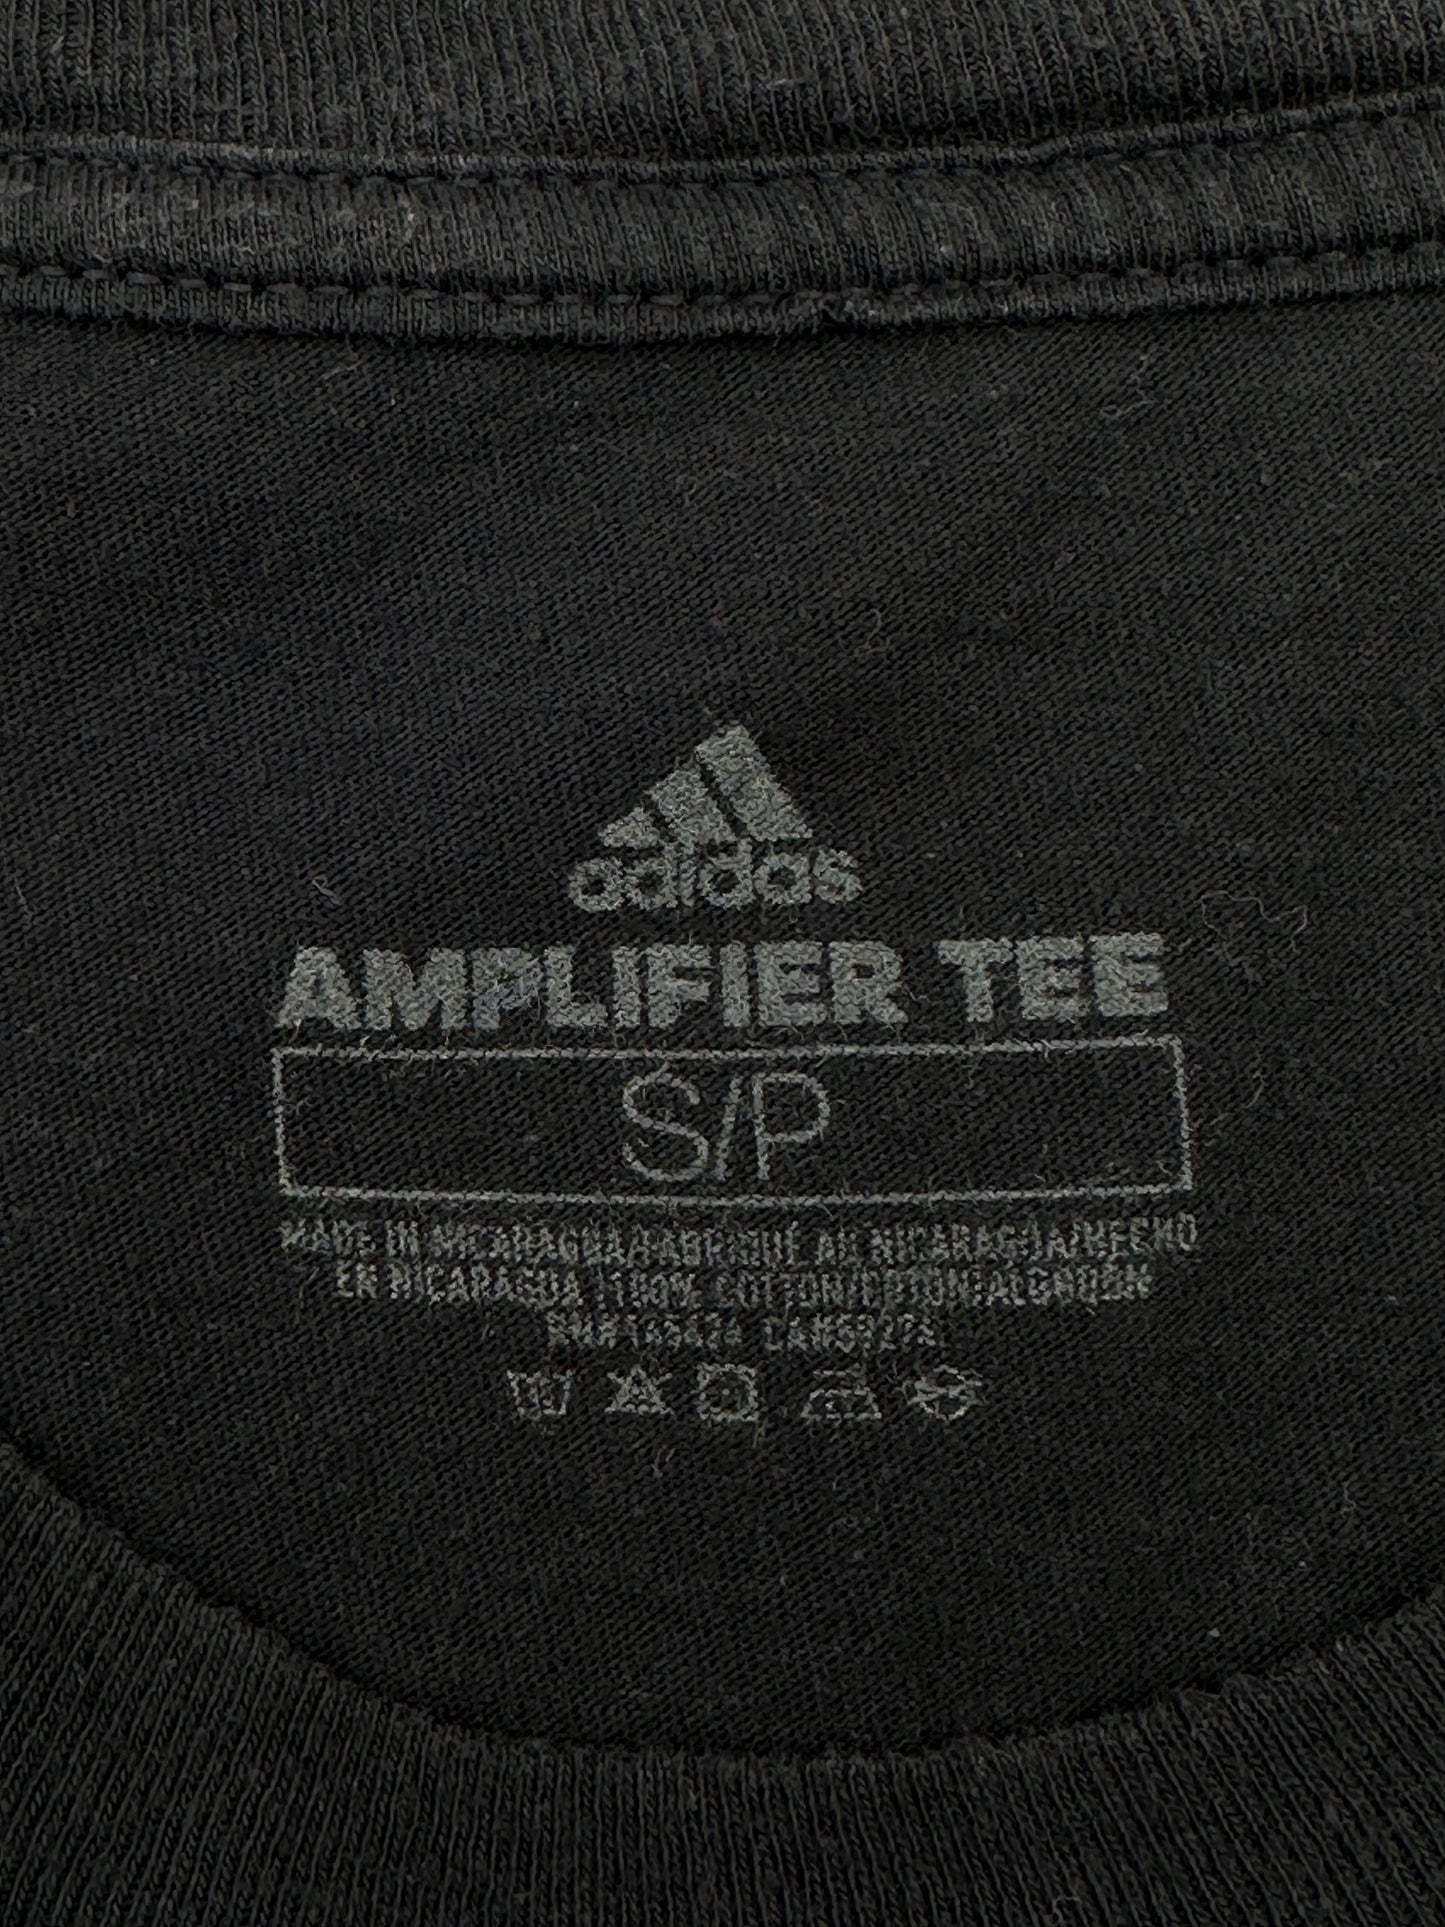 Adidas Men's Size S Navy Blue Amplifier Short Sleeve Logo Tee T-Shirt